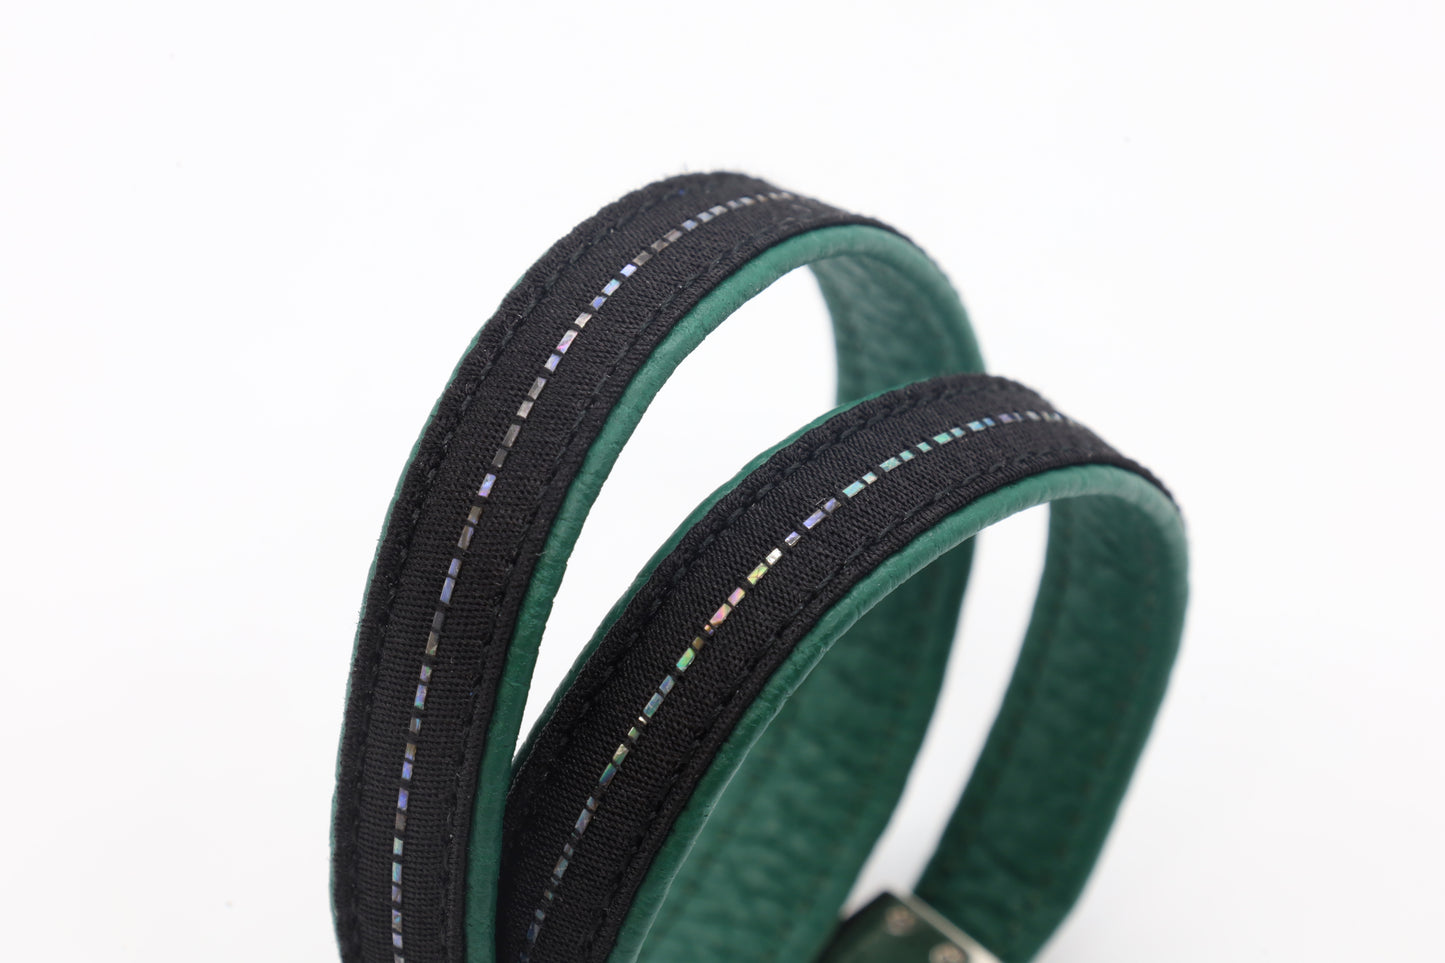 Bracelet Line S size